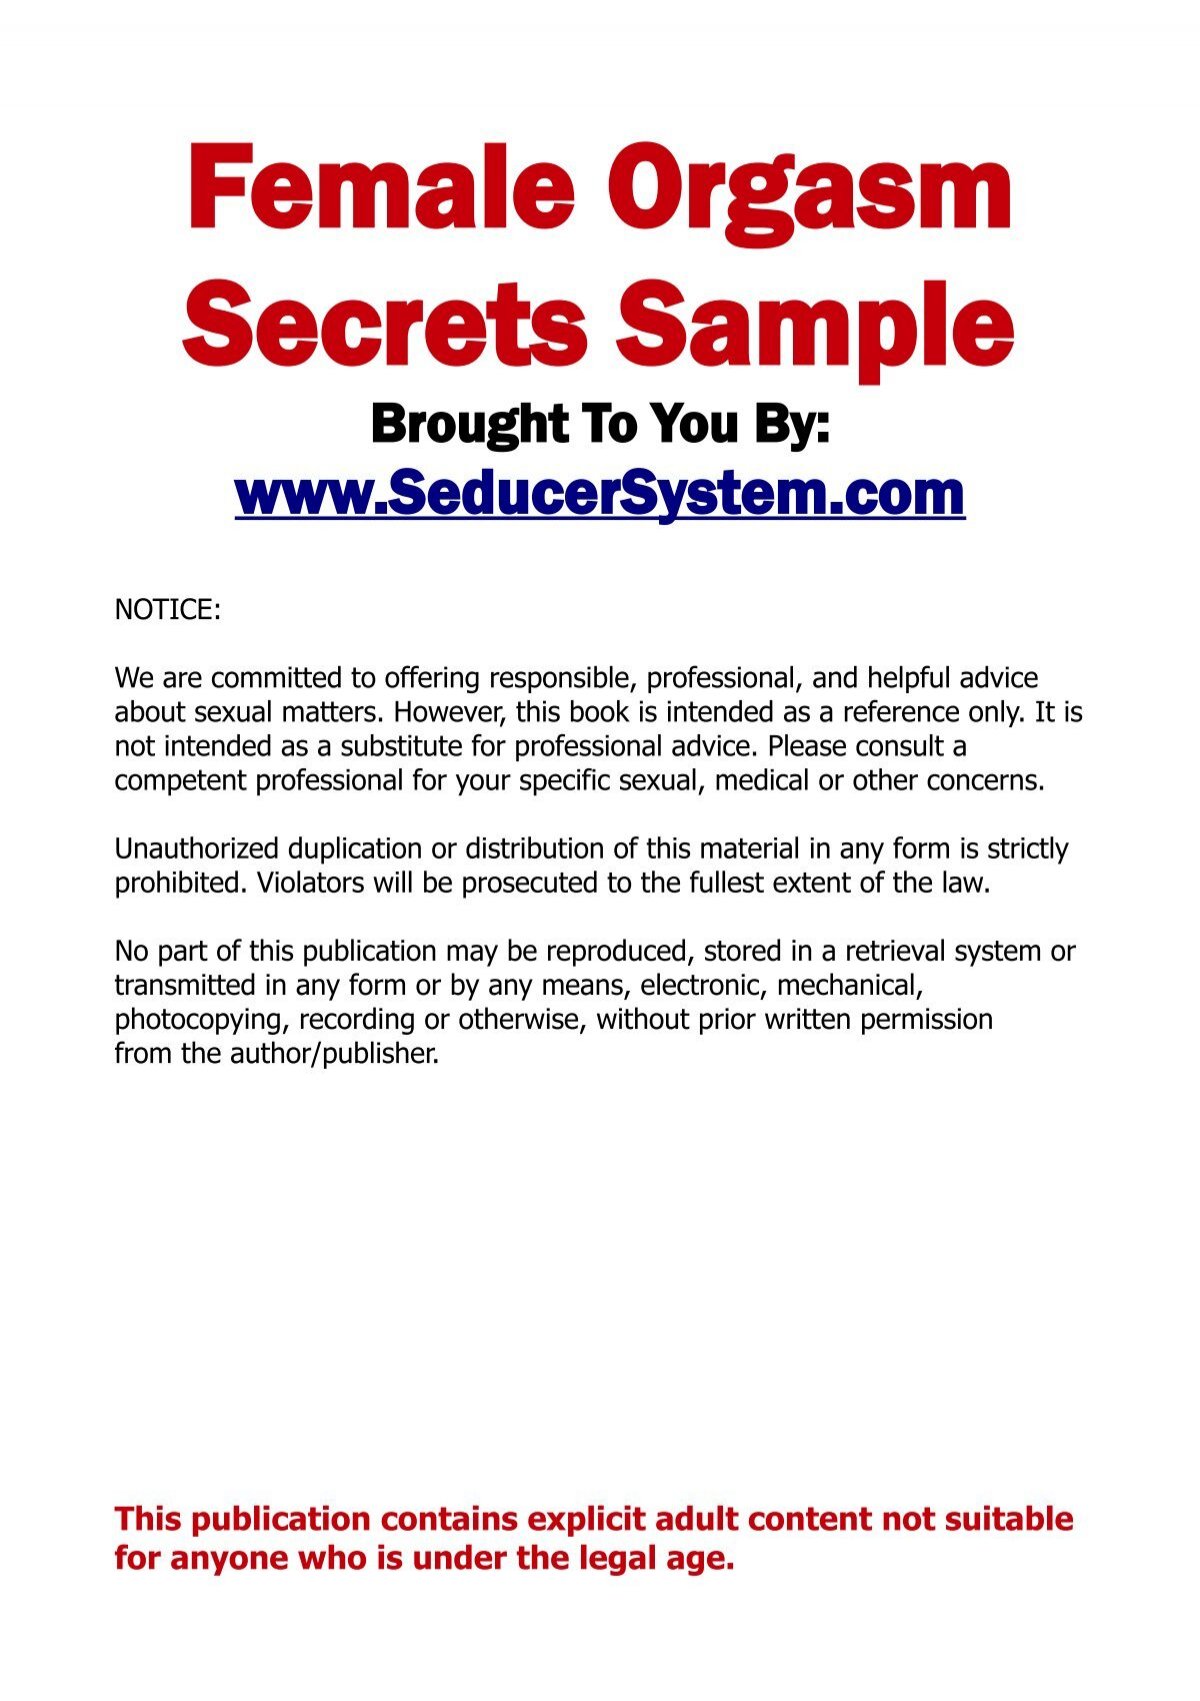 Download Female Orgasm Secrets Sample The Seducer System